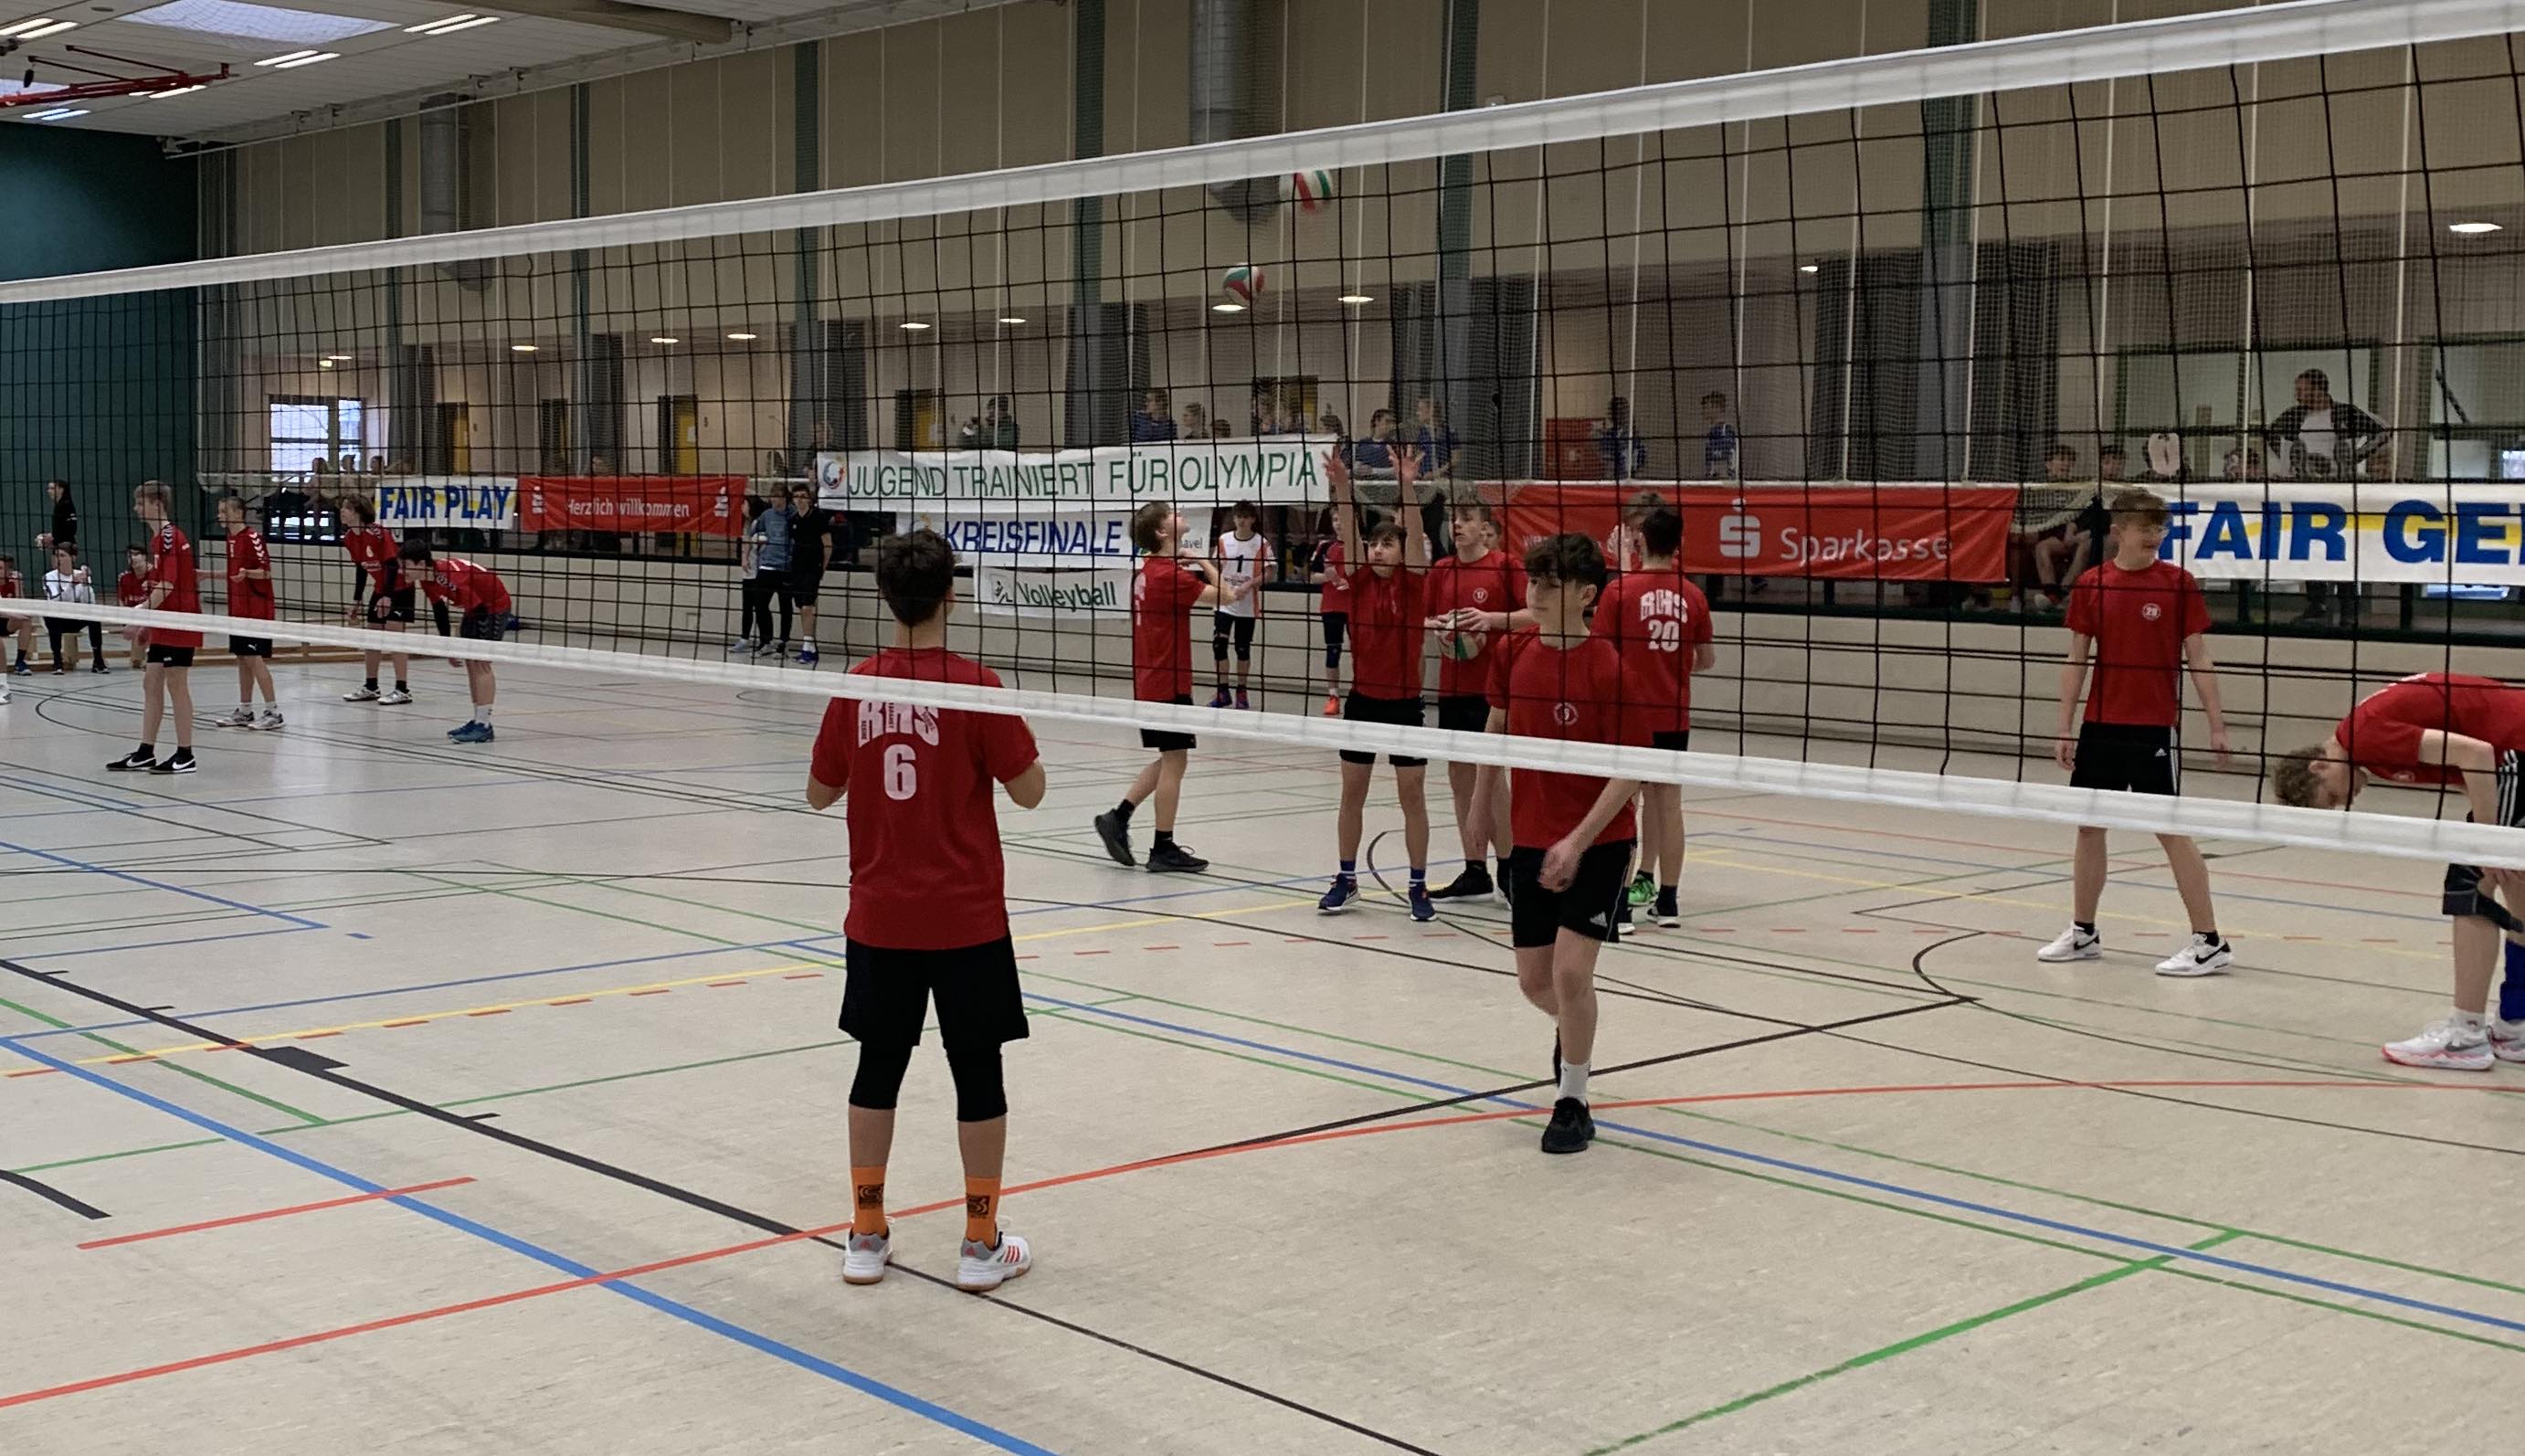 Jugend trainiert für Olympia Volleyball WK II in Velten Kreisfinale